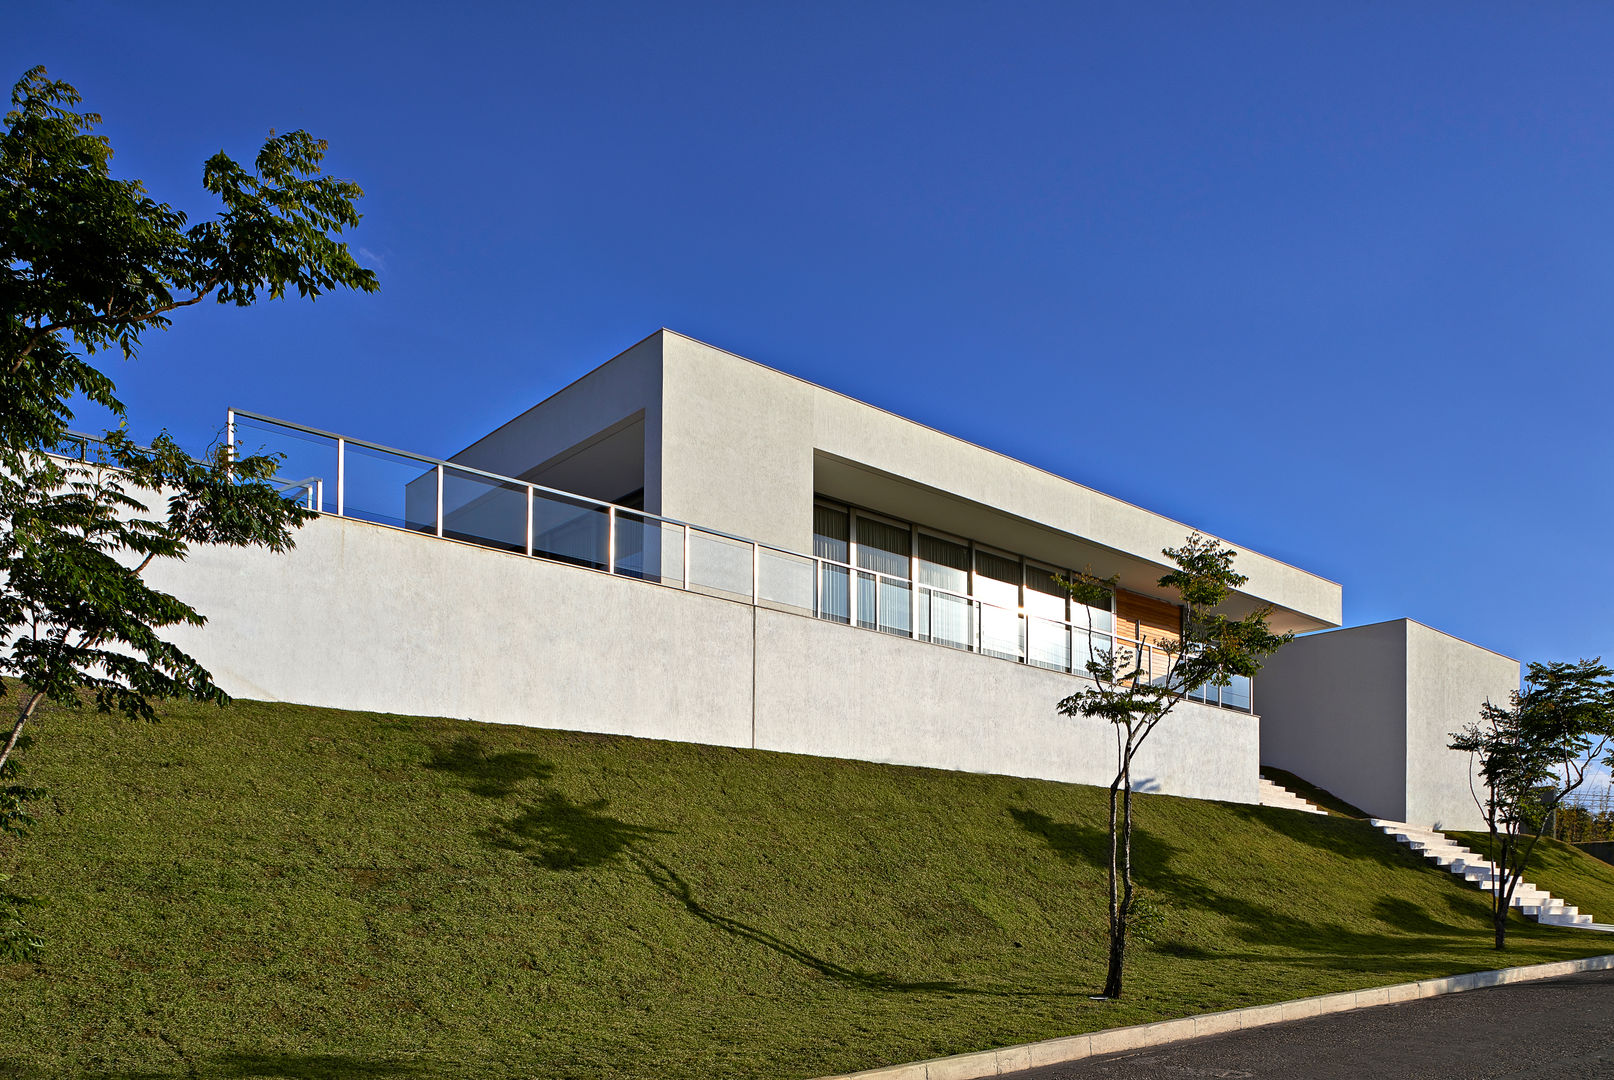 Casa no Condomínio Serra dos Manacás, Lanza Arquitetos Lanza Arquitetos Casas estilo moderno: ideas, arquitectura e imágenes